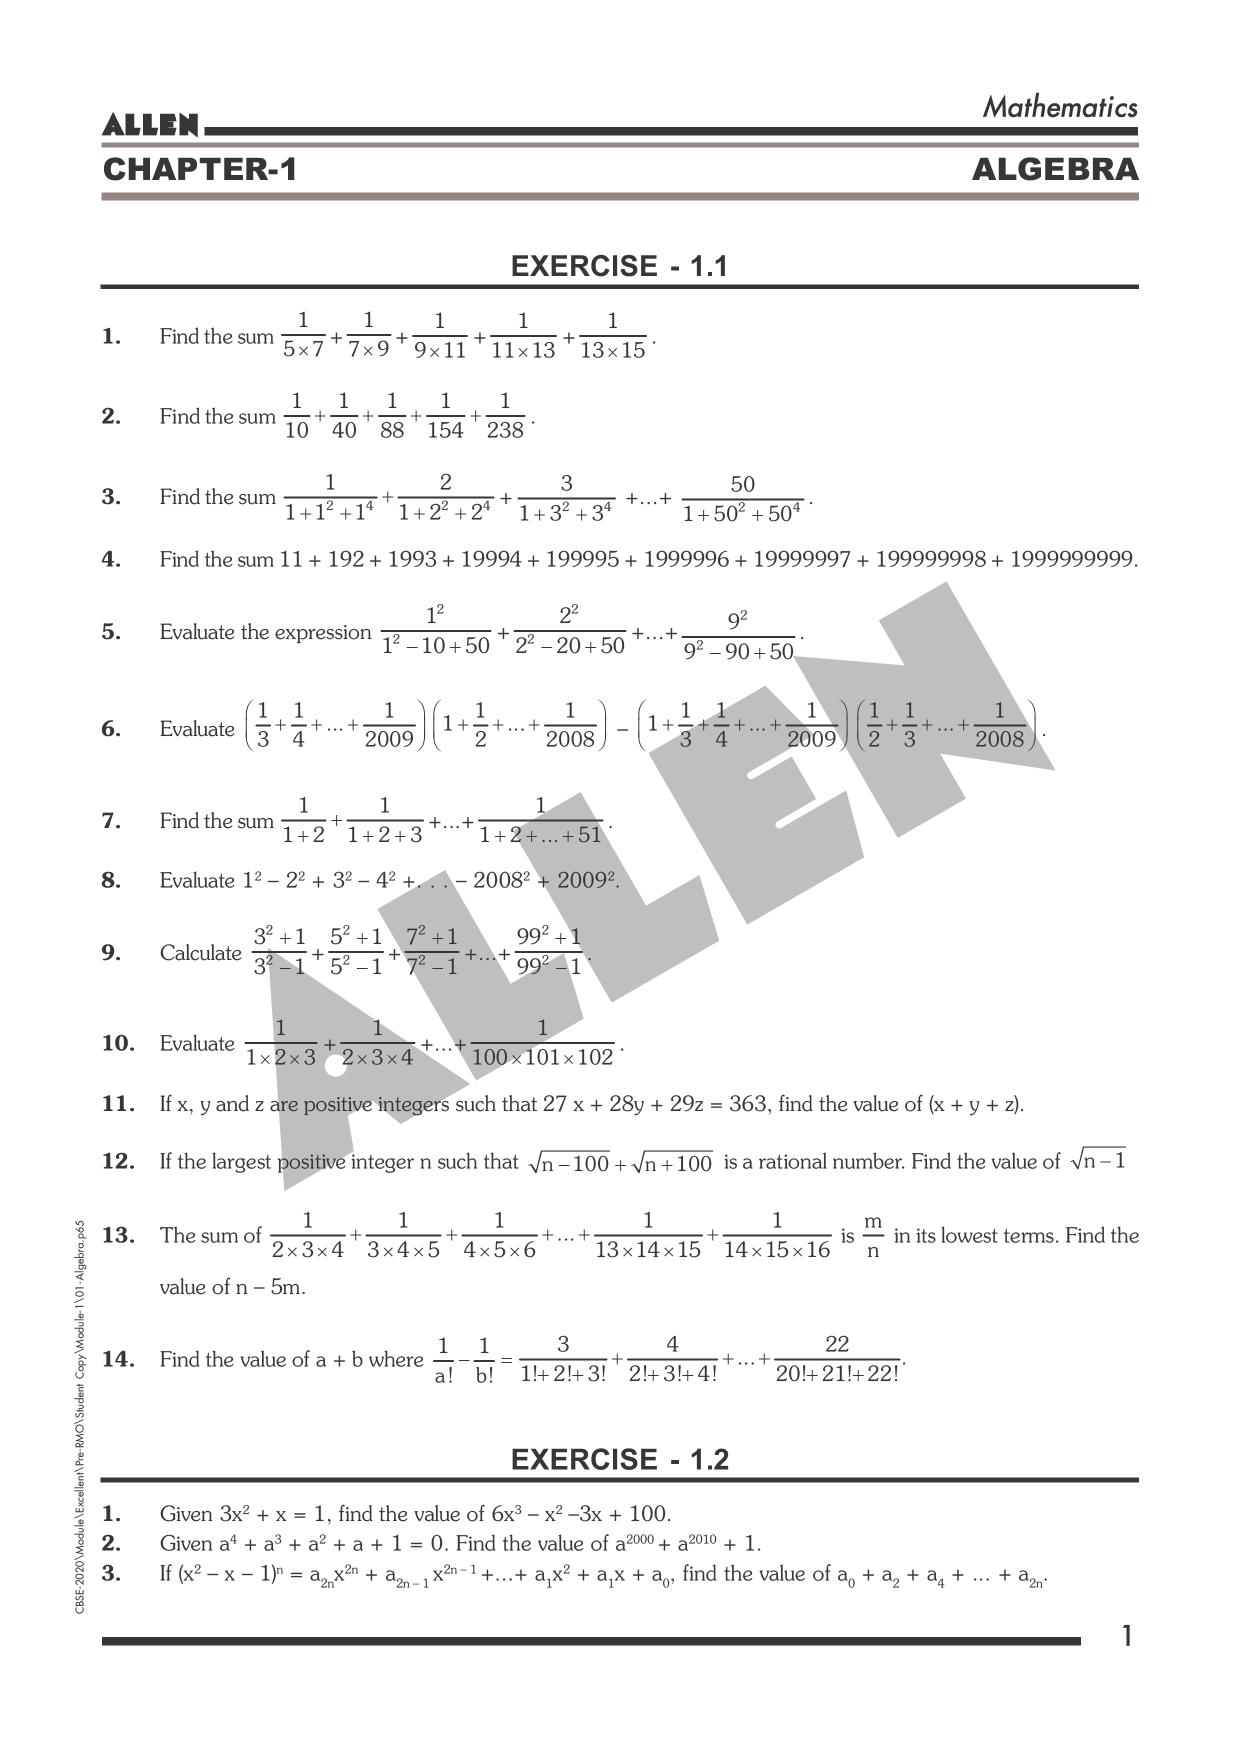 Allen PRMO/IOQM sheet: Algebra by Allen